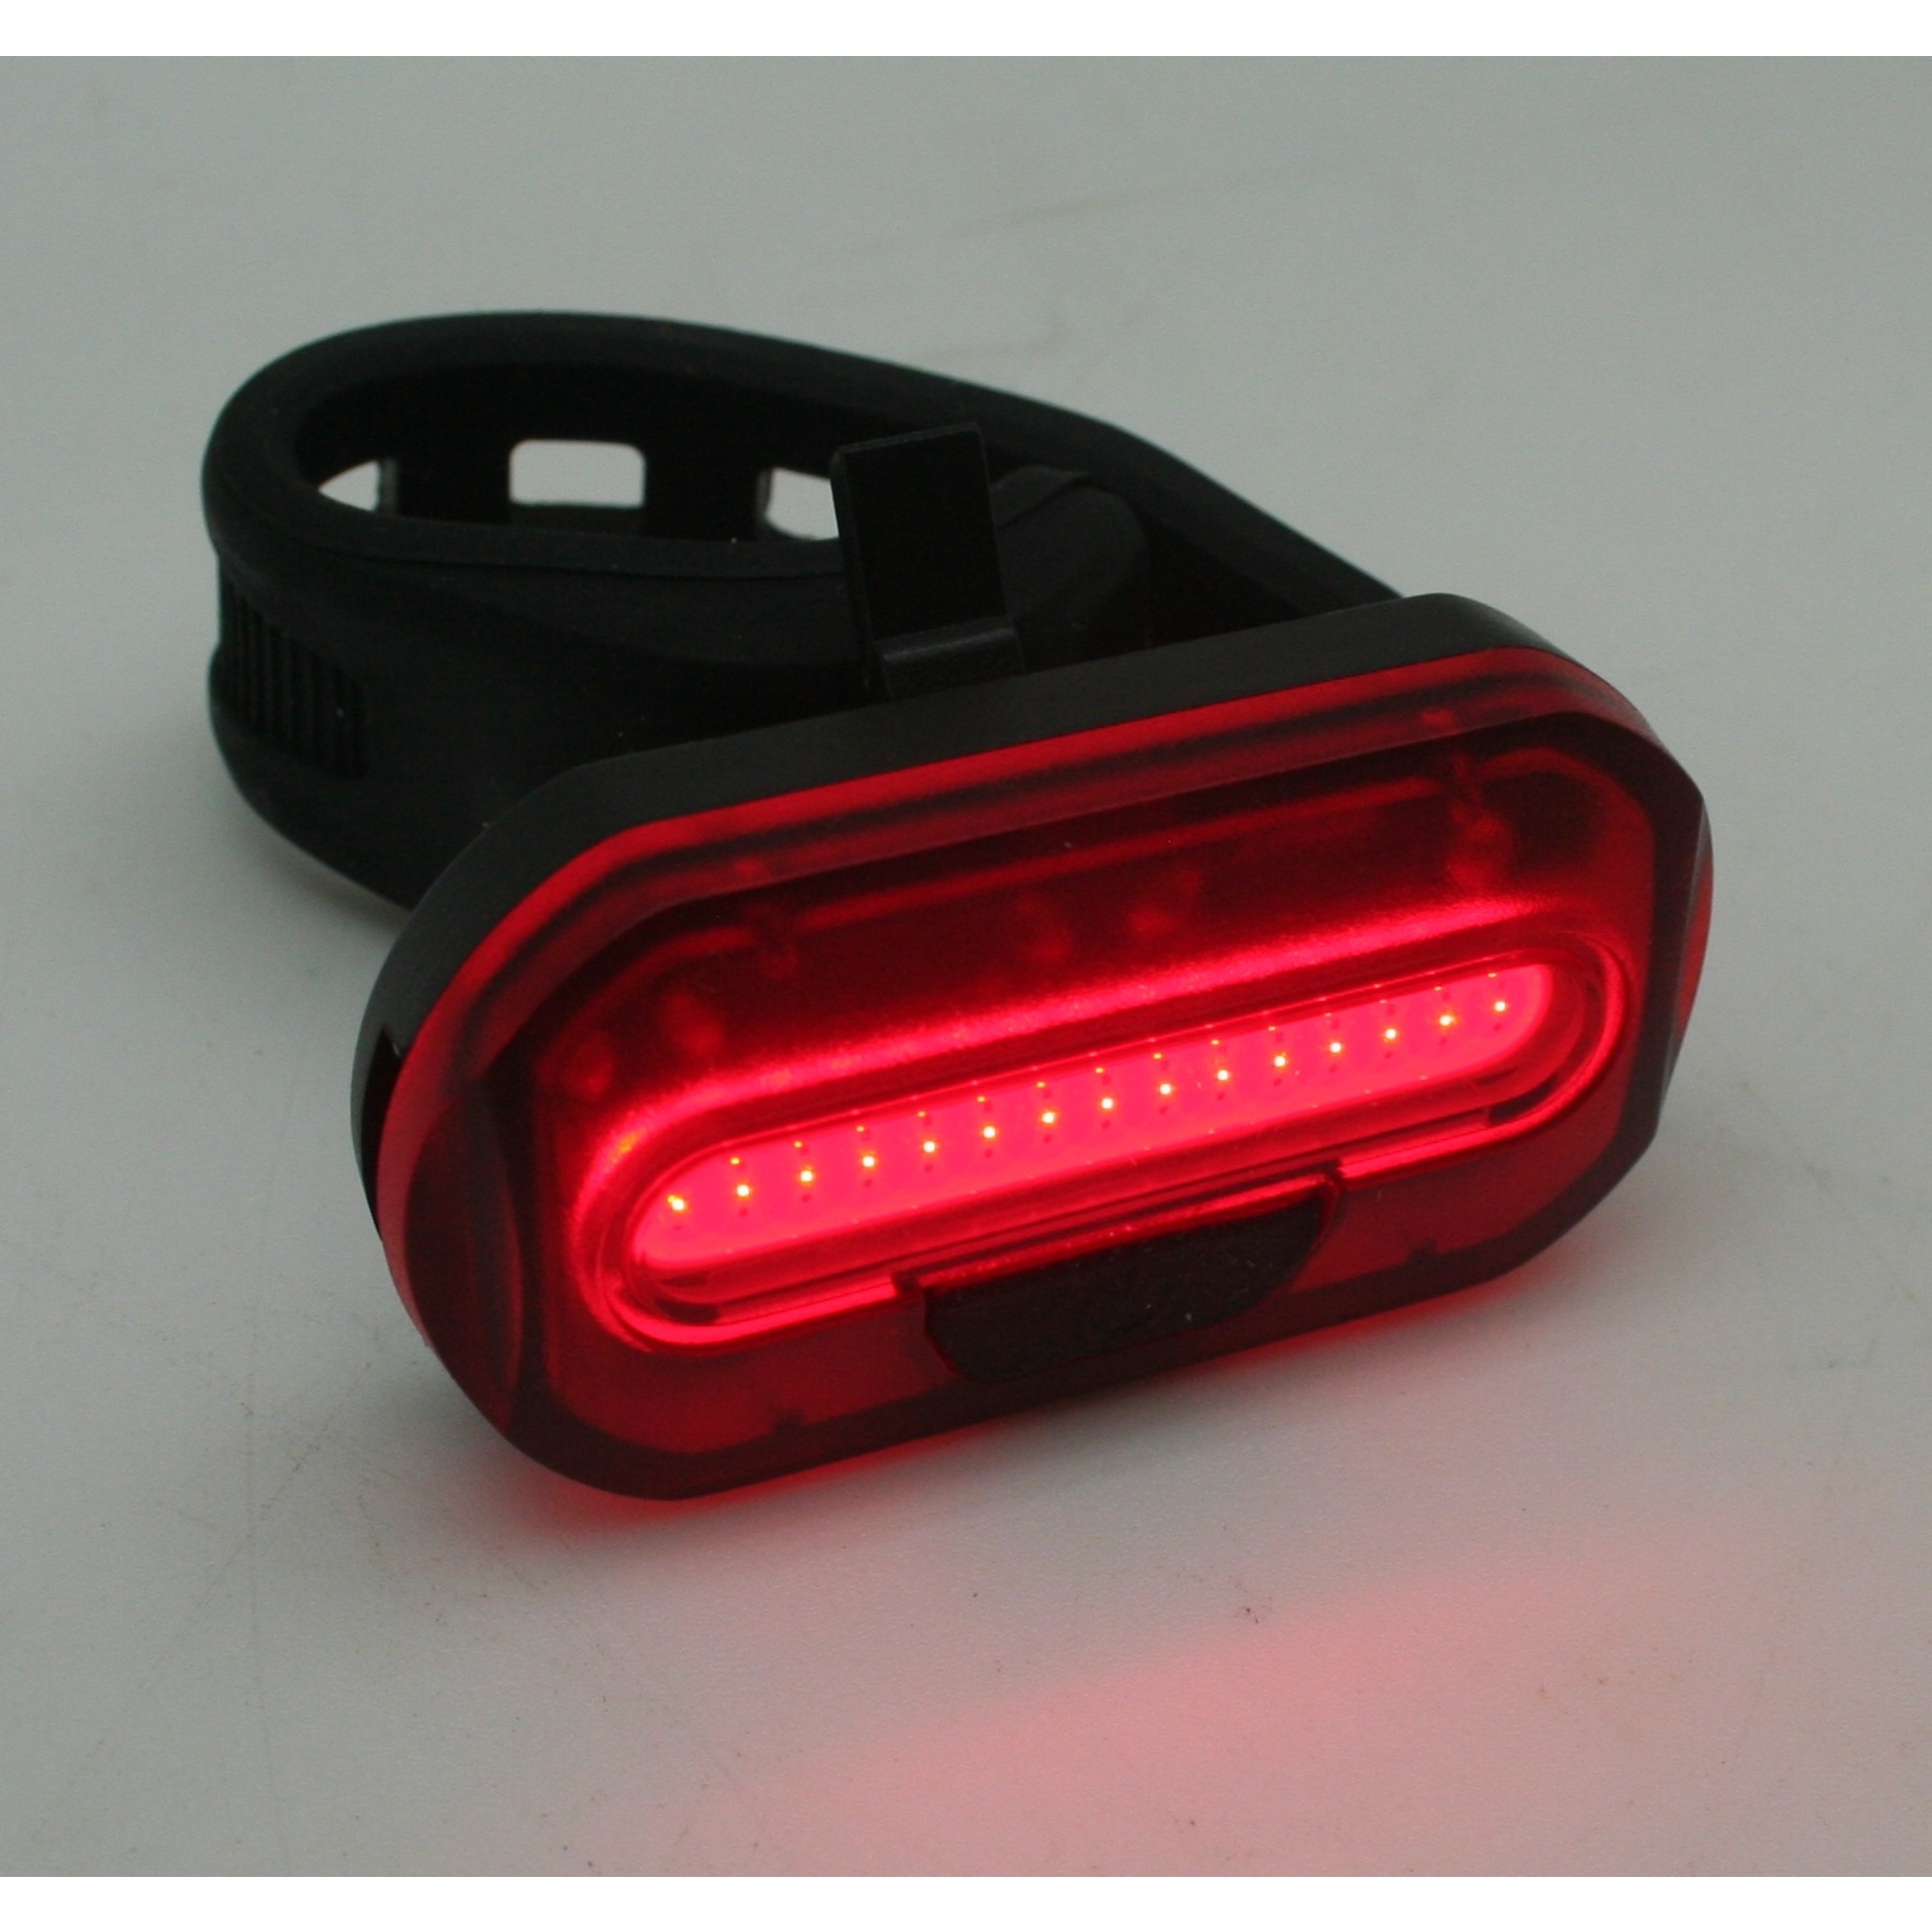 les Nuchter Tomaat Benson Fietslamp Achterlicht Ultra COB LED Compact Rood kopen? - 2Cheap